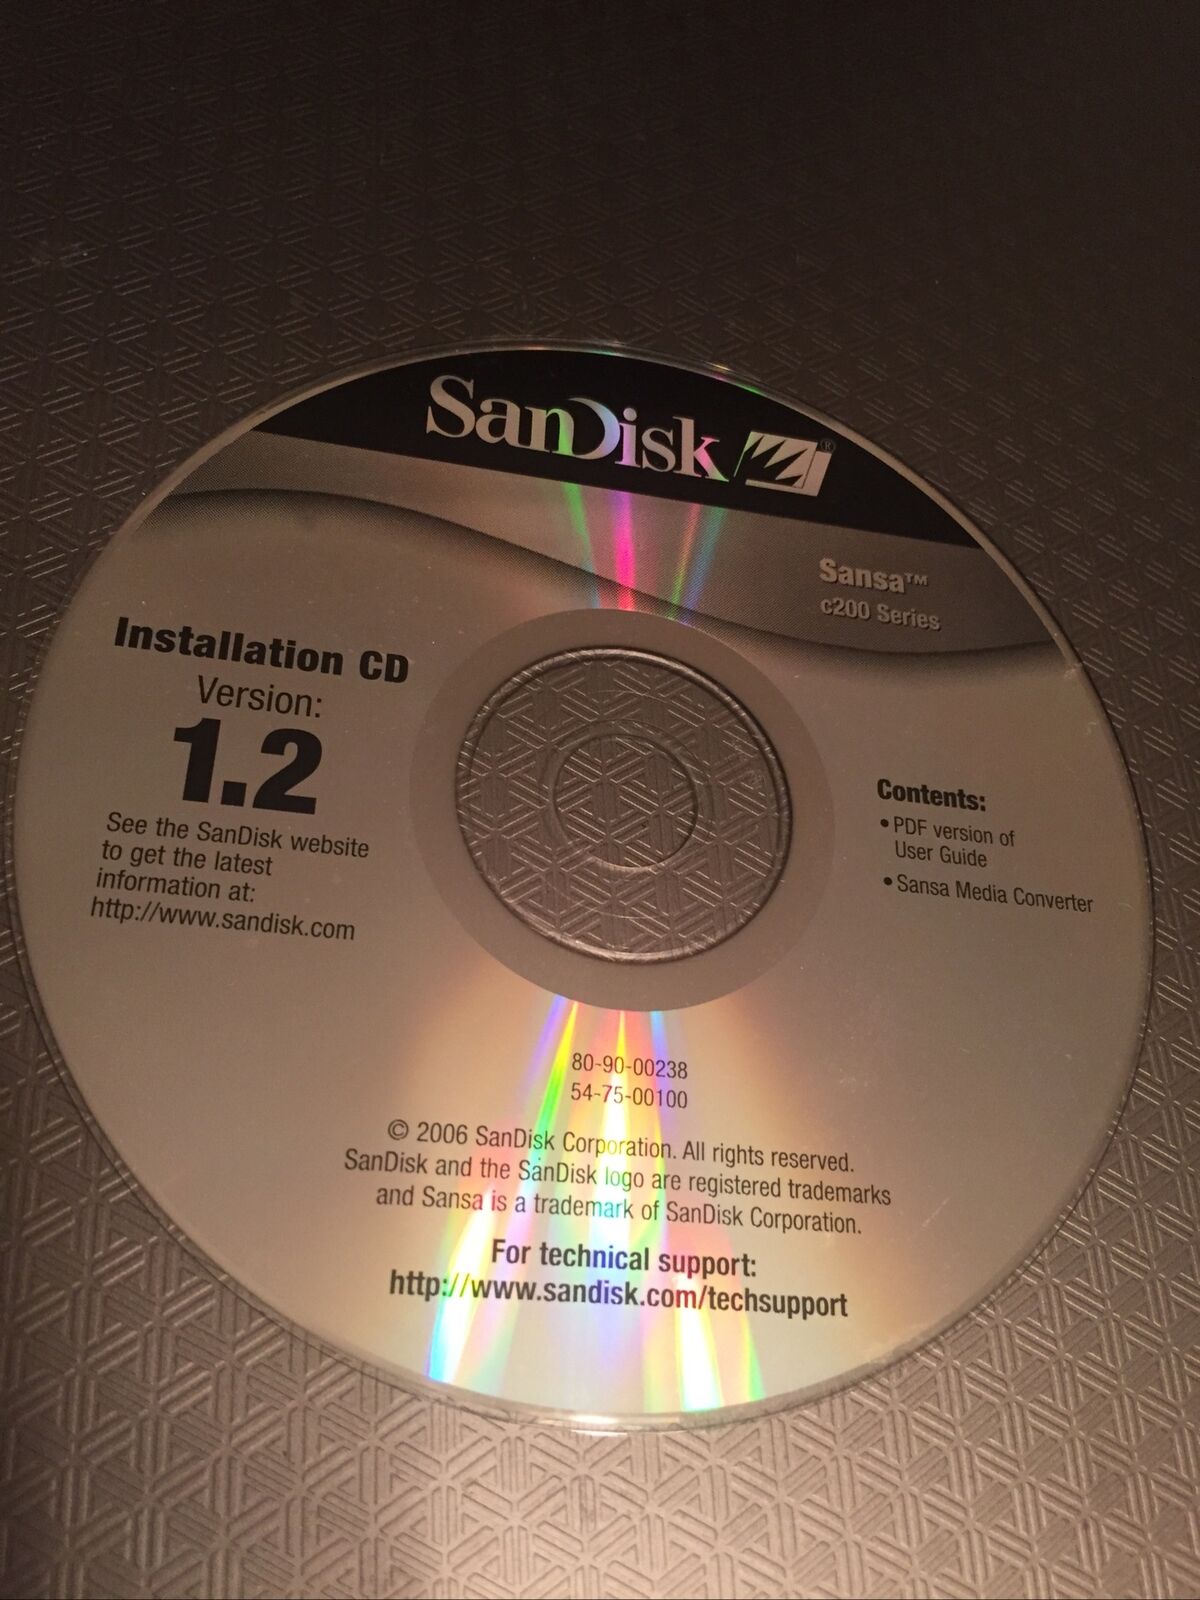 ScanDisk Installation CD Version 1.2